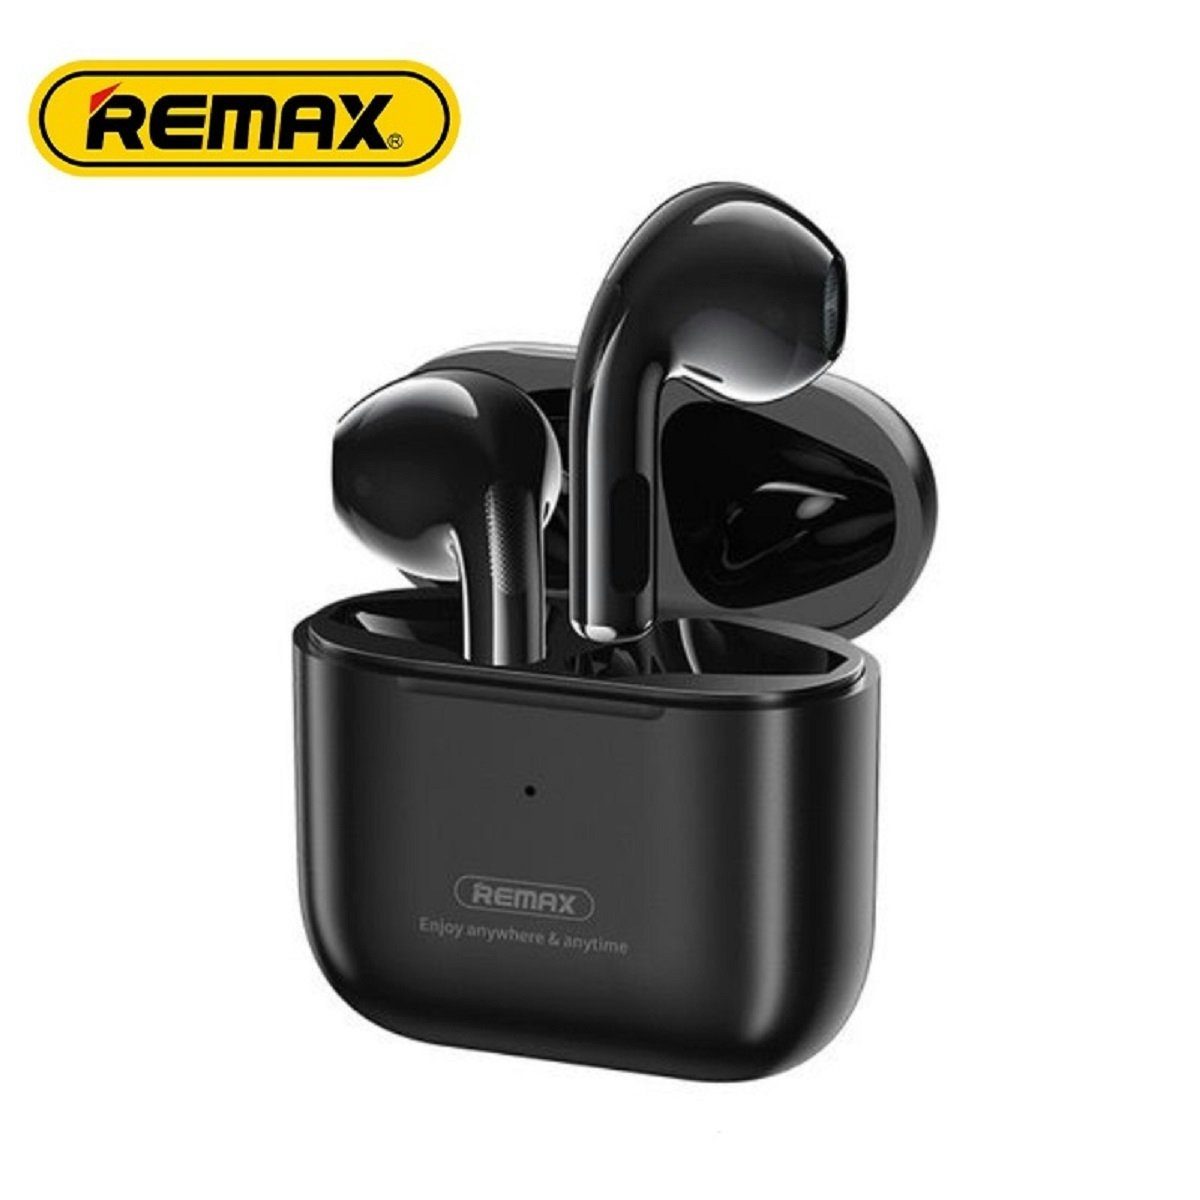 Remax TWS-10i 5.0 Kopfhörer True Wireless mit Ladecase für Smartphone (Weiß) Bluetooth-Kopfhörer (Wireless, True Wireless, TWS, bluetooth, wasserdicht, Aktive Geräuschunterdrückung)